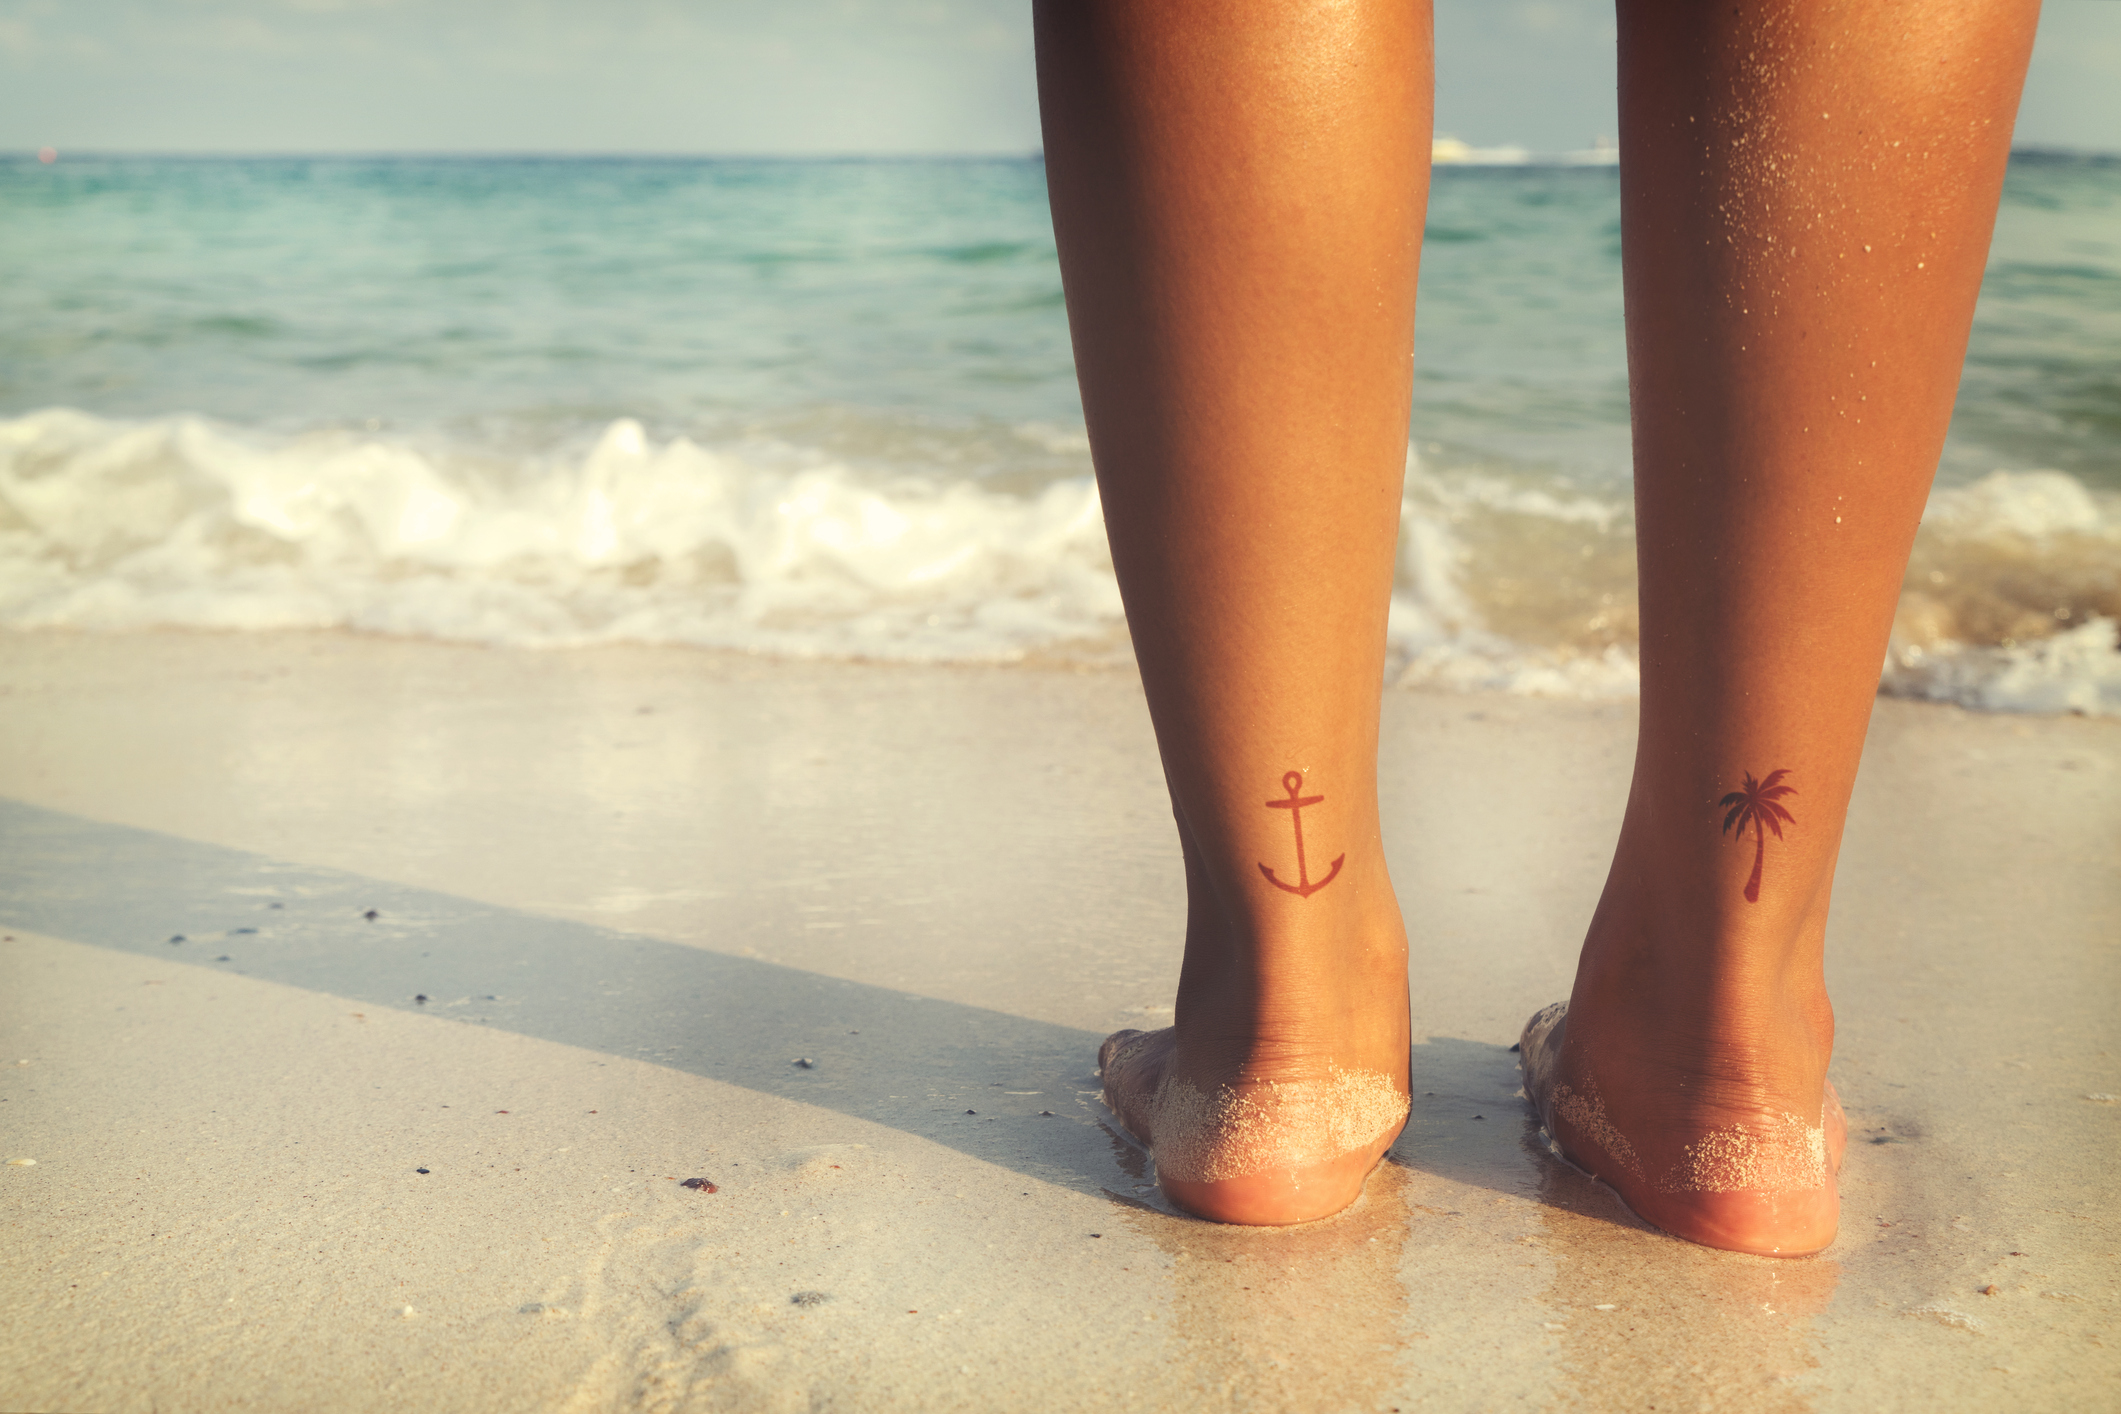 Tatuagem de henna na praia pode ser perigosa para a saúde